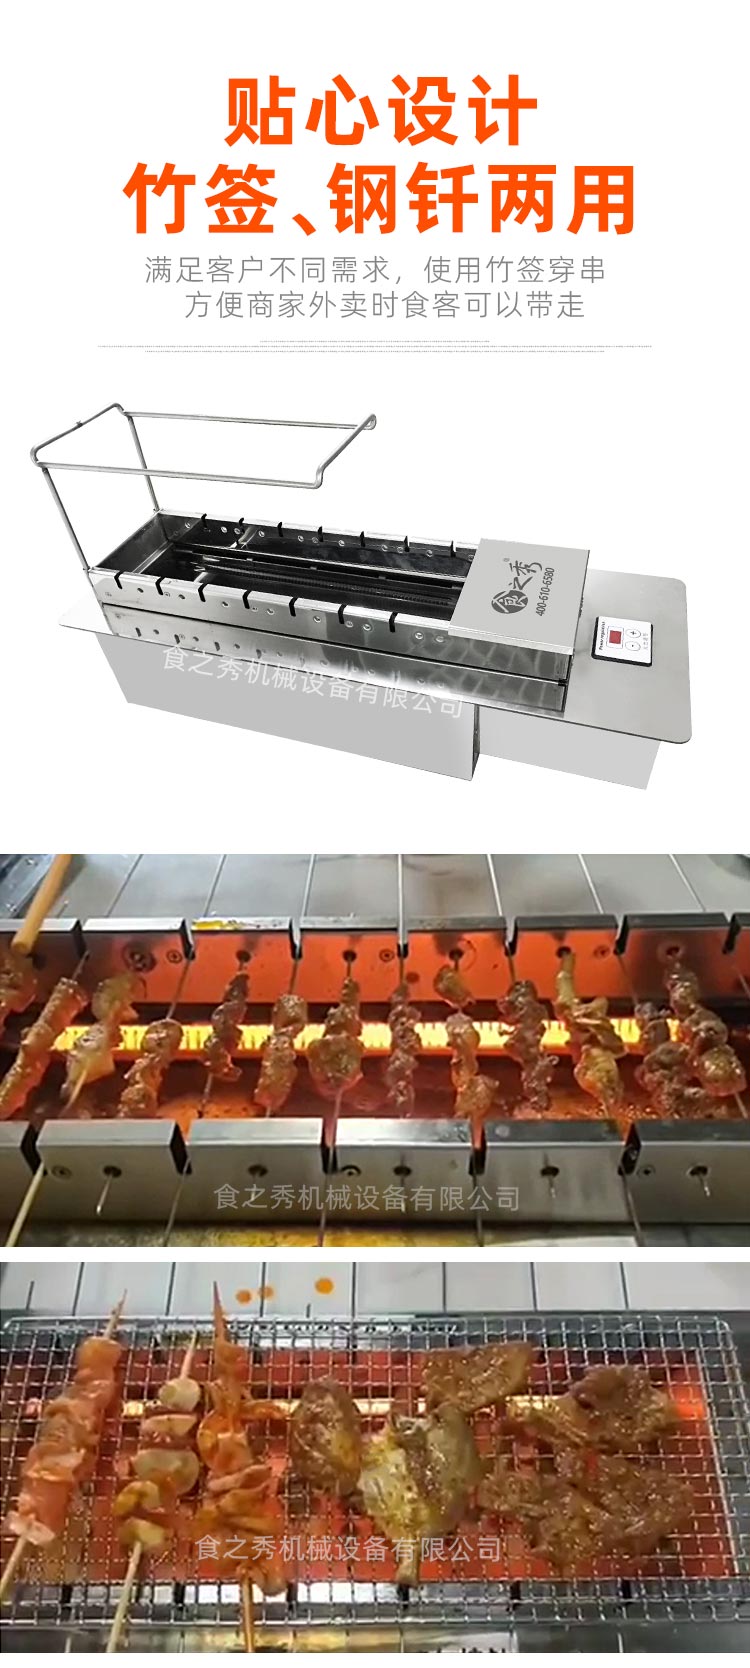 食之秀竹签版自动电烤炉，竹签钢钎两用版自动电烤炉